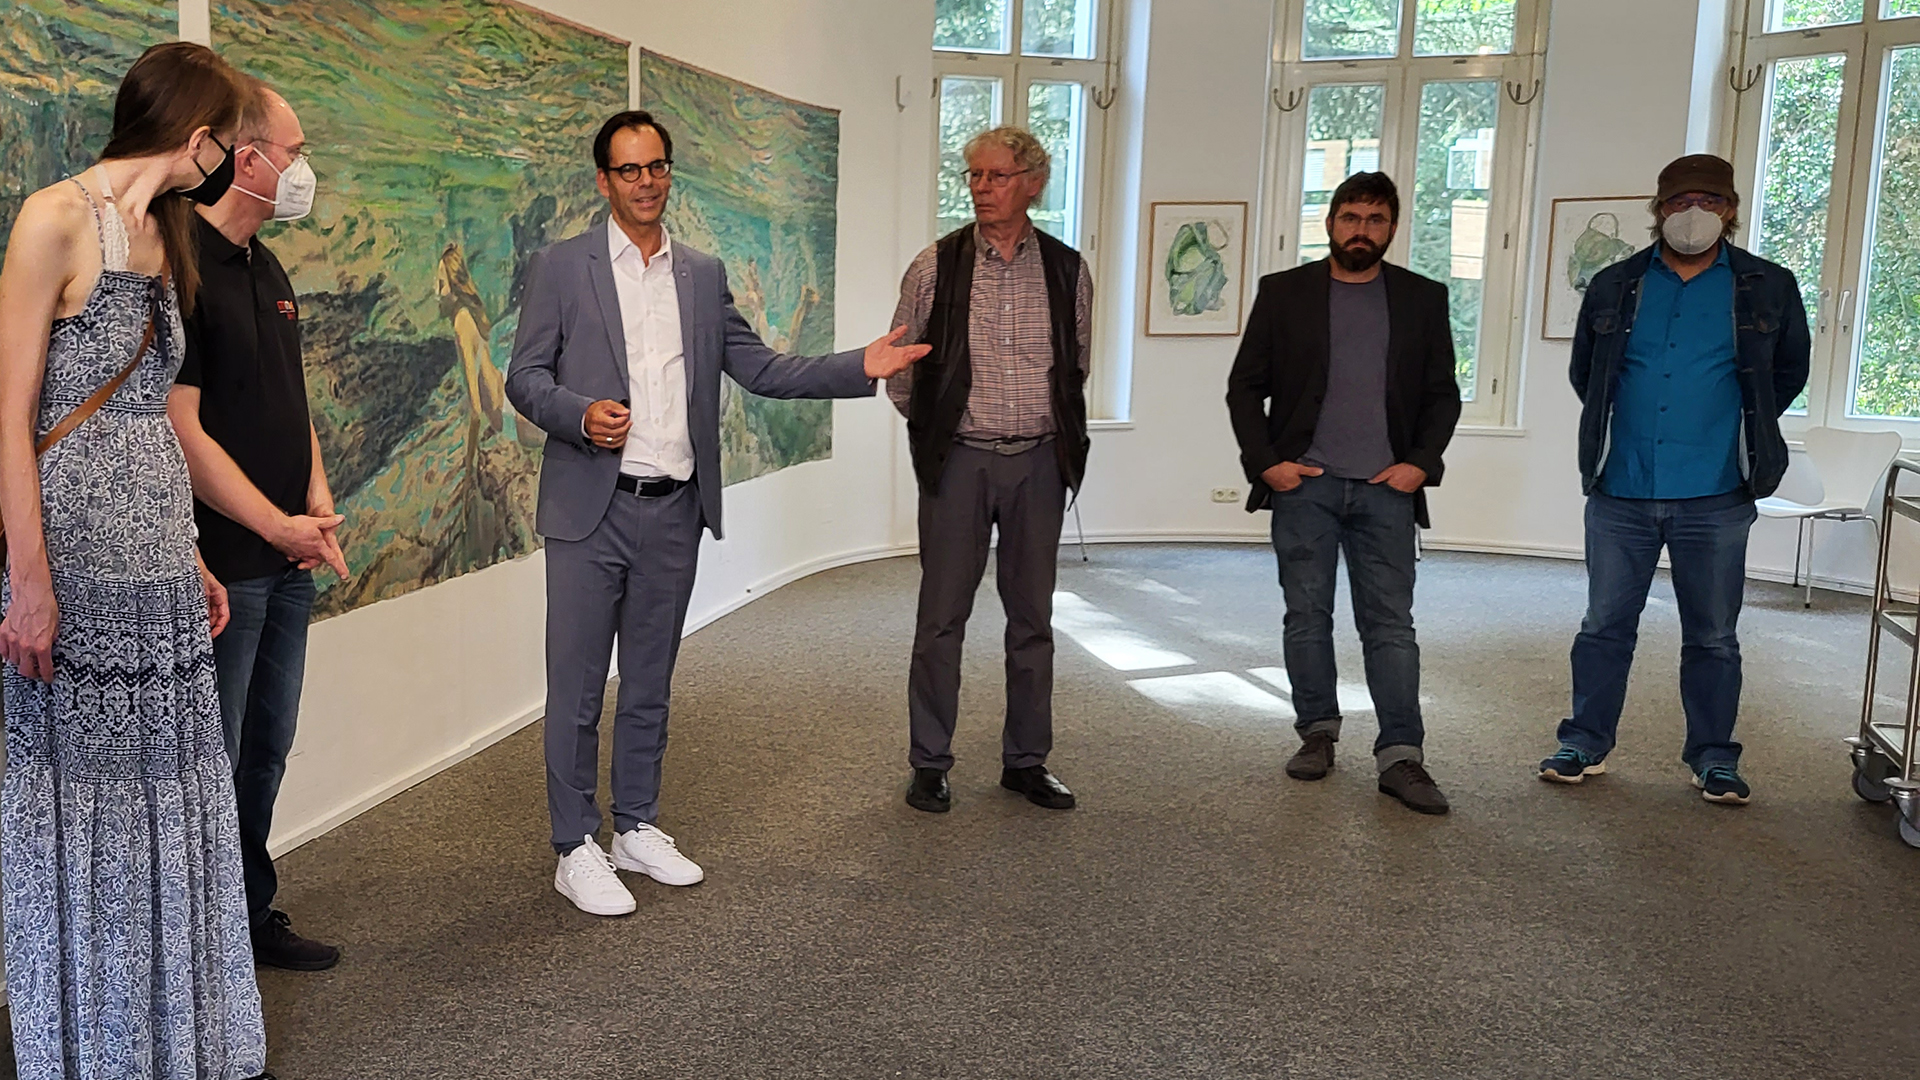 Michael Willemse, Vorstand der Volksbank Viersen, begrüßt die Teilnehmer der Galerieführung mit Emil Schult.